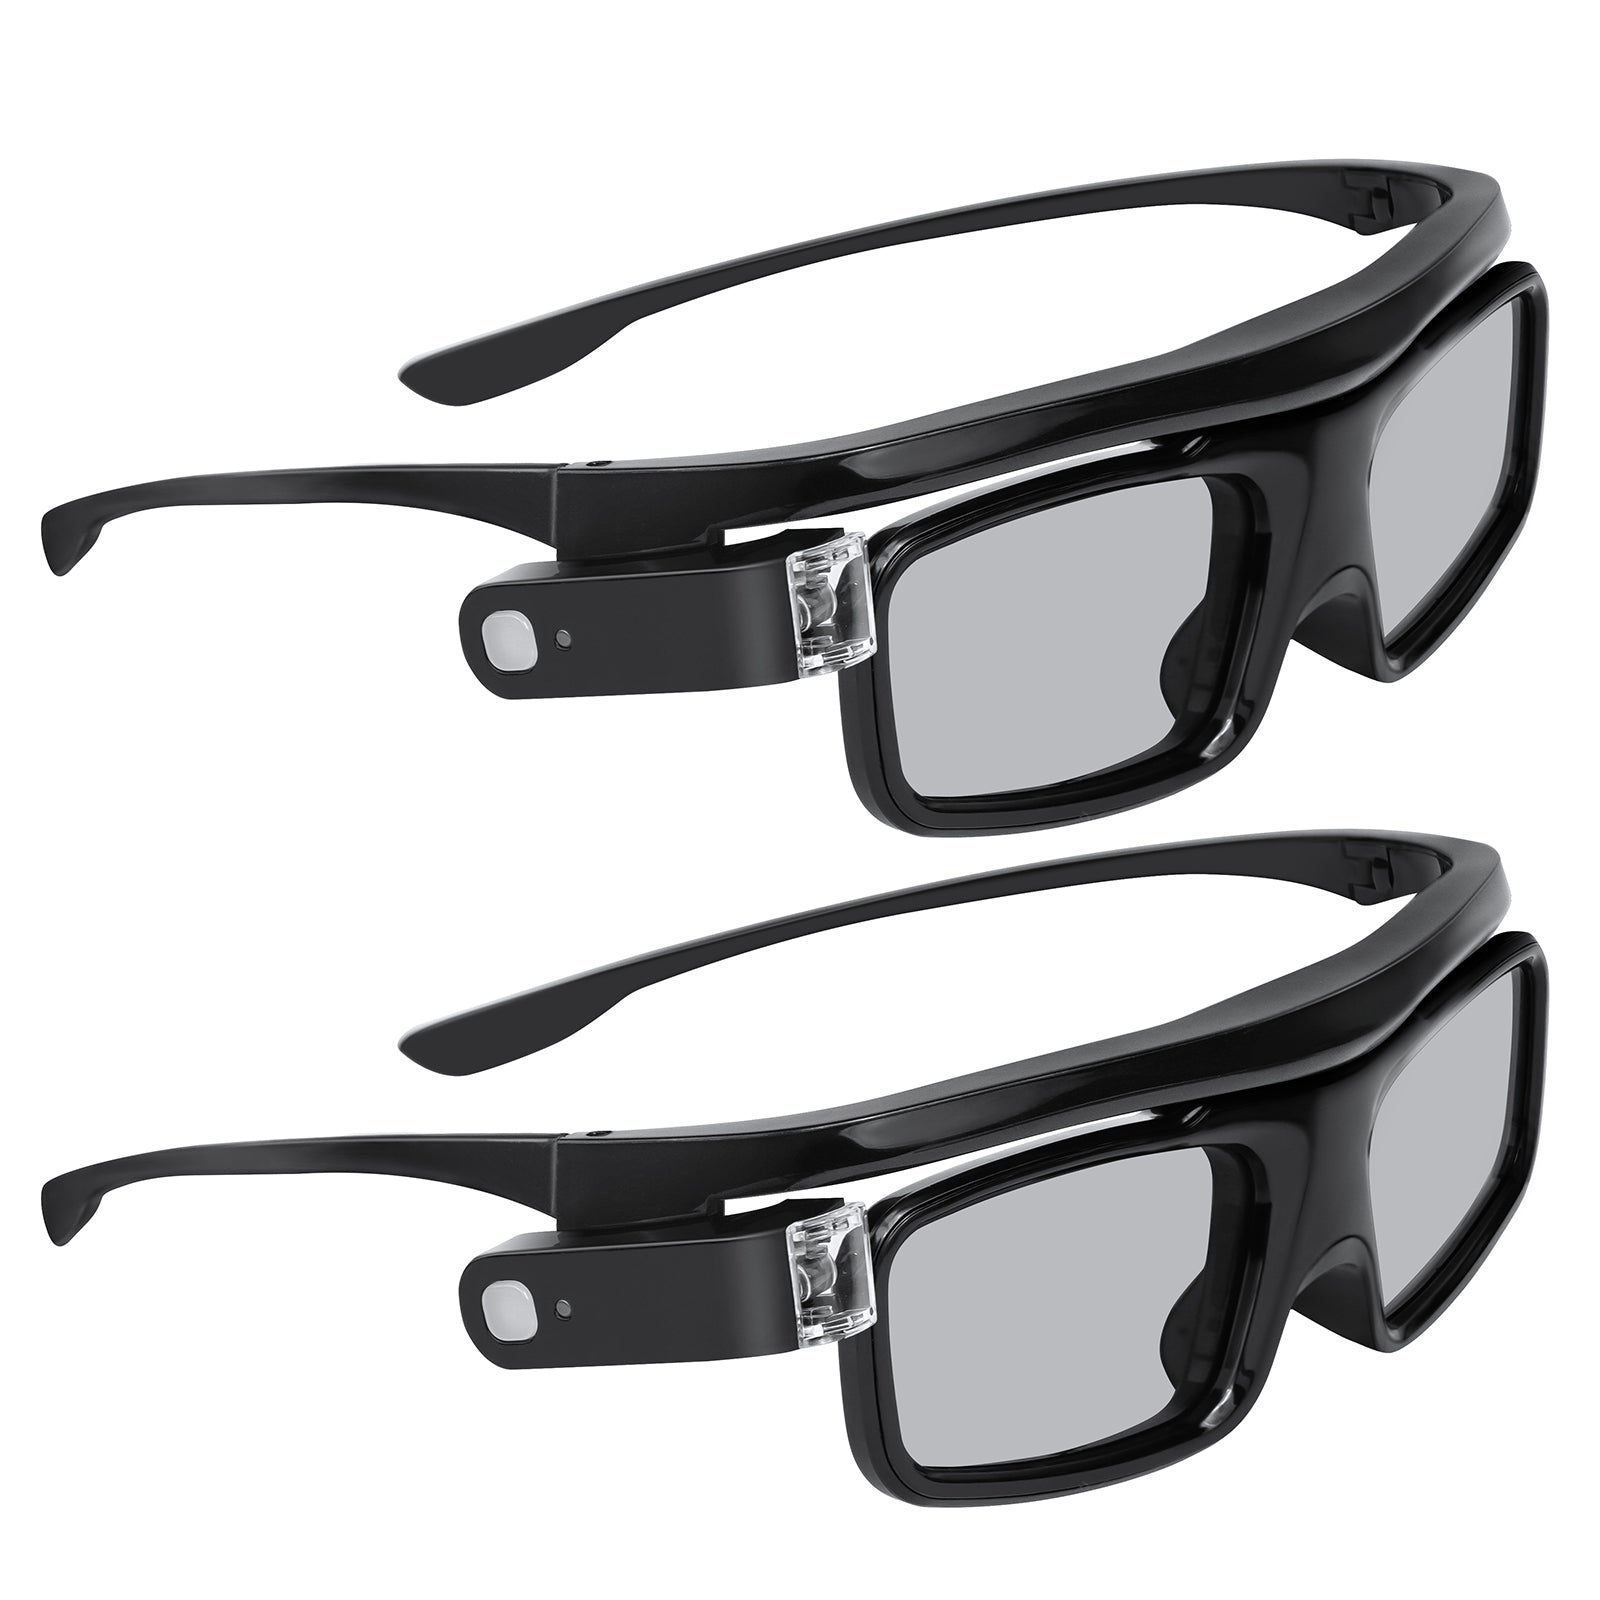 NexiGo 3D Glasses DLP-L01 (2 Pack) consumerelectronics - NexiGo